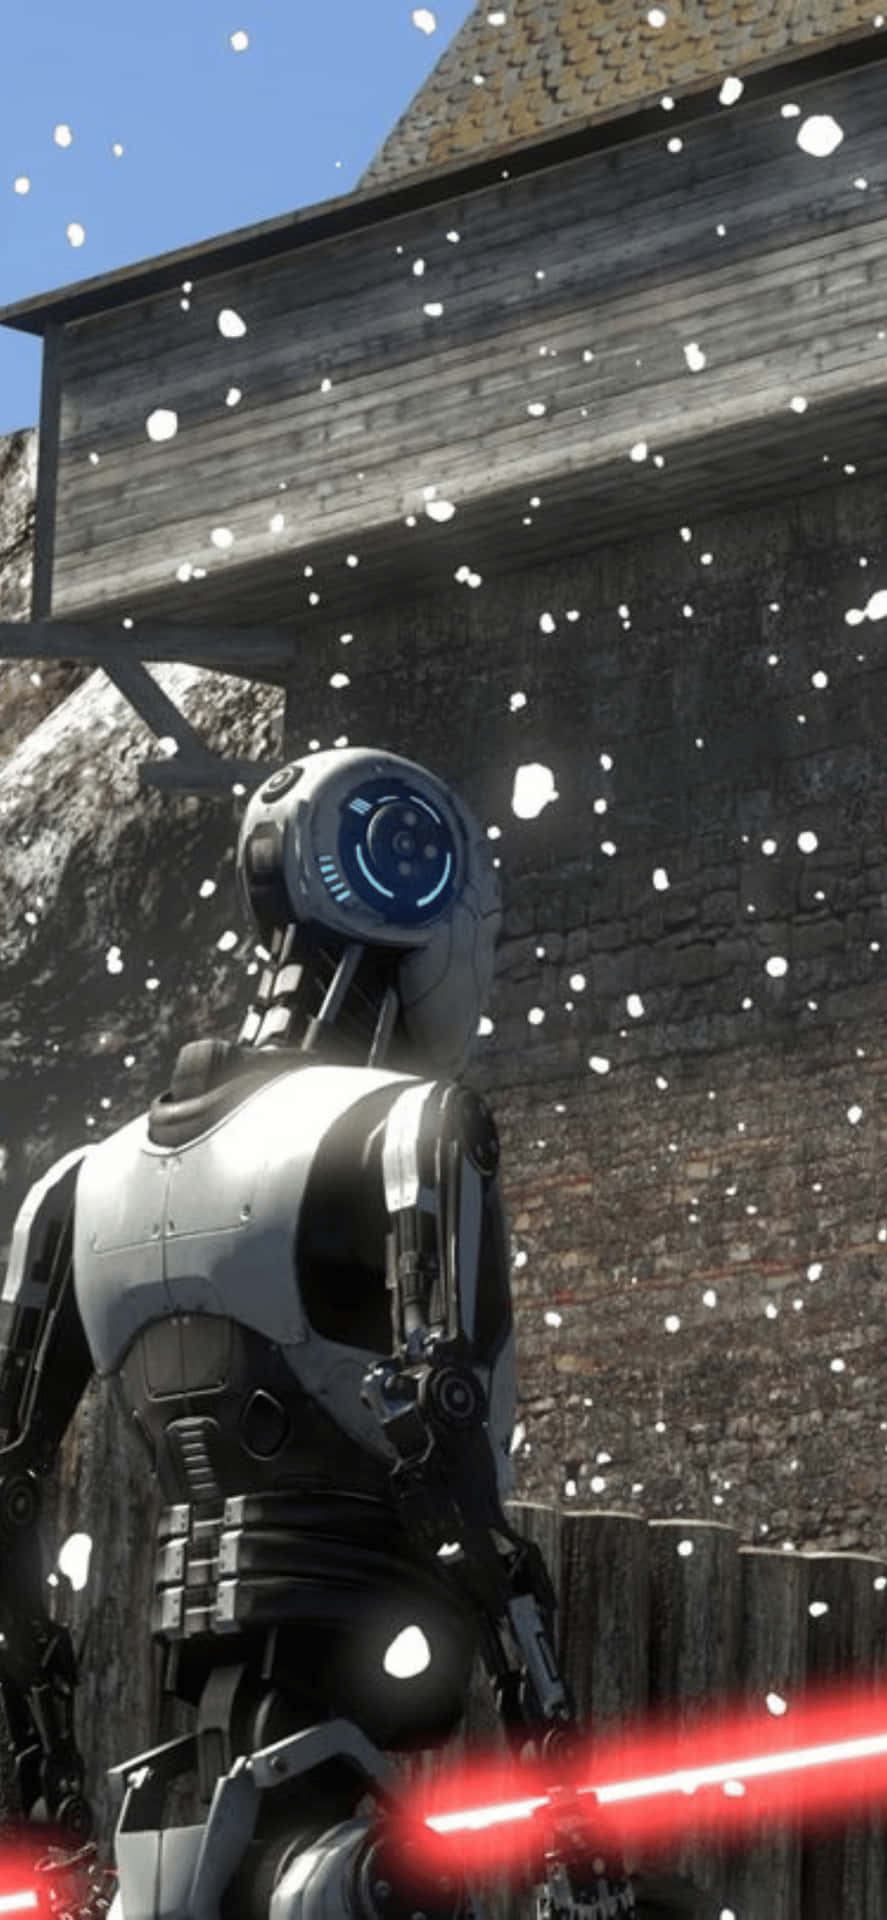 Unrobot De Star Wars Está Parado En La Nieve.